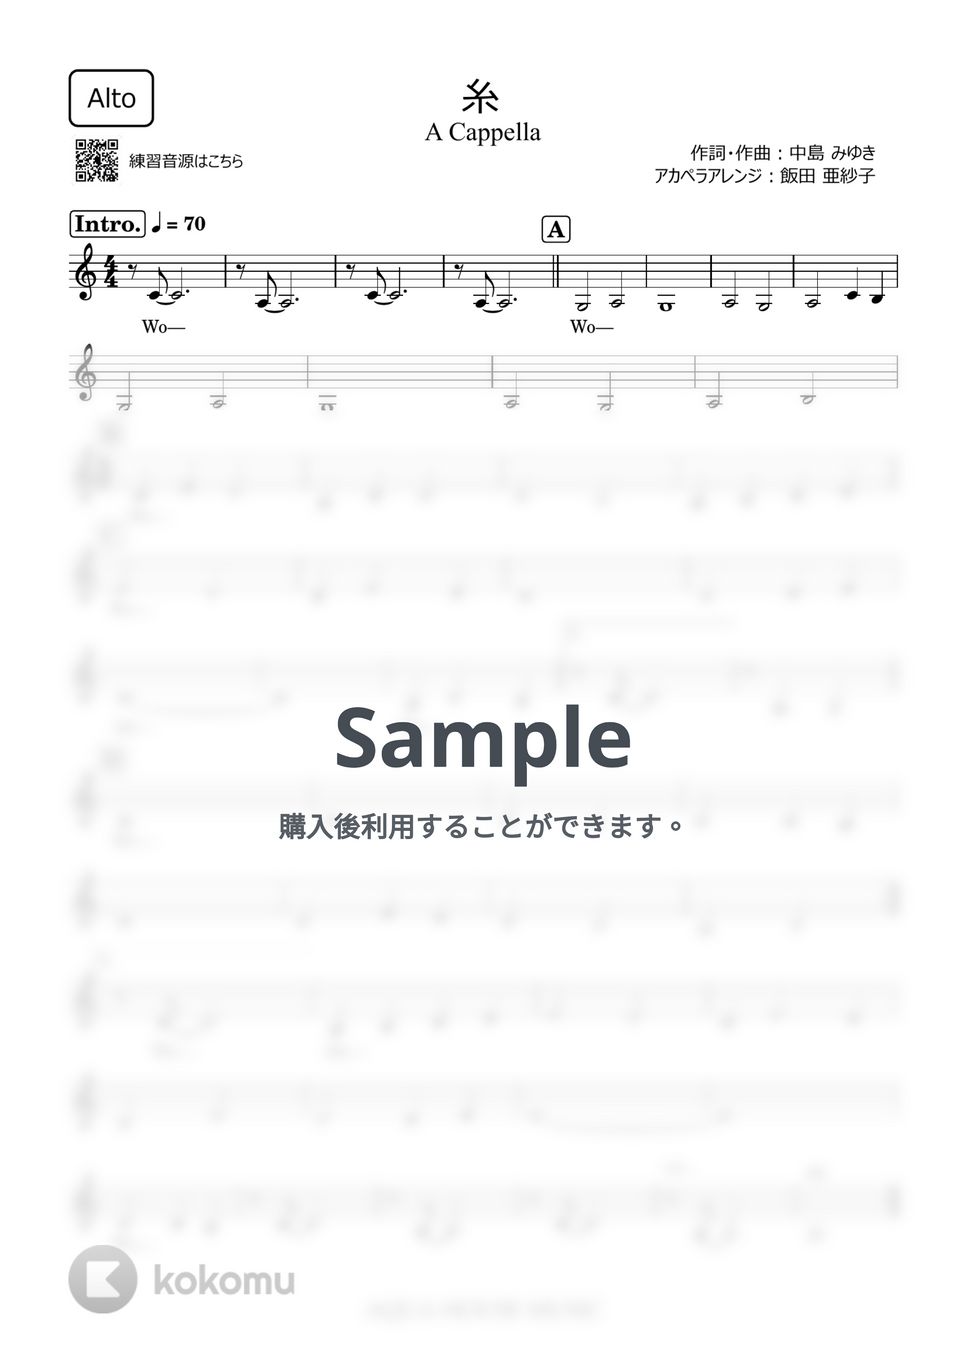 中島みゆき - 糸 (アカペラ楽譜♪Altoパート譜) by 飯田 亜紗子